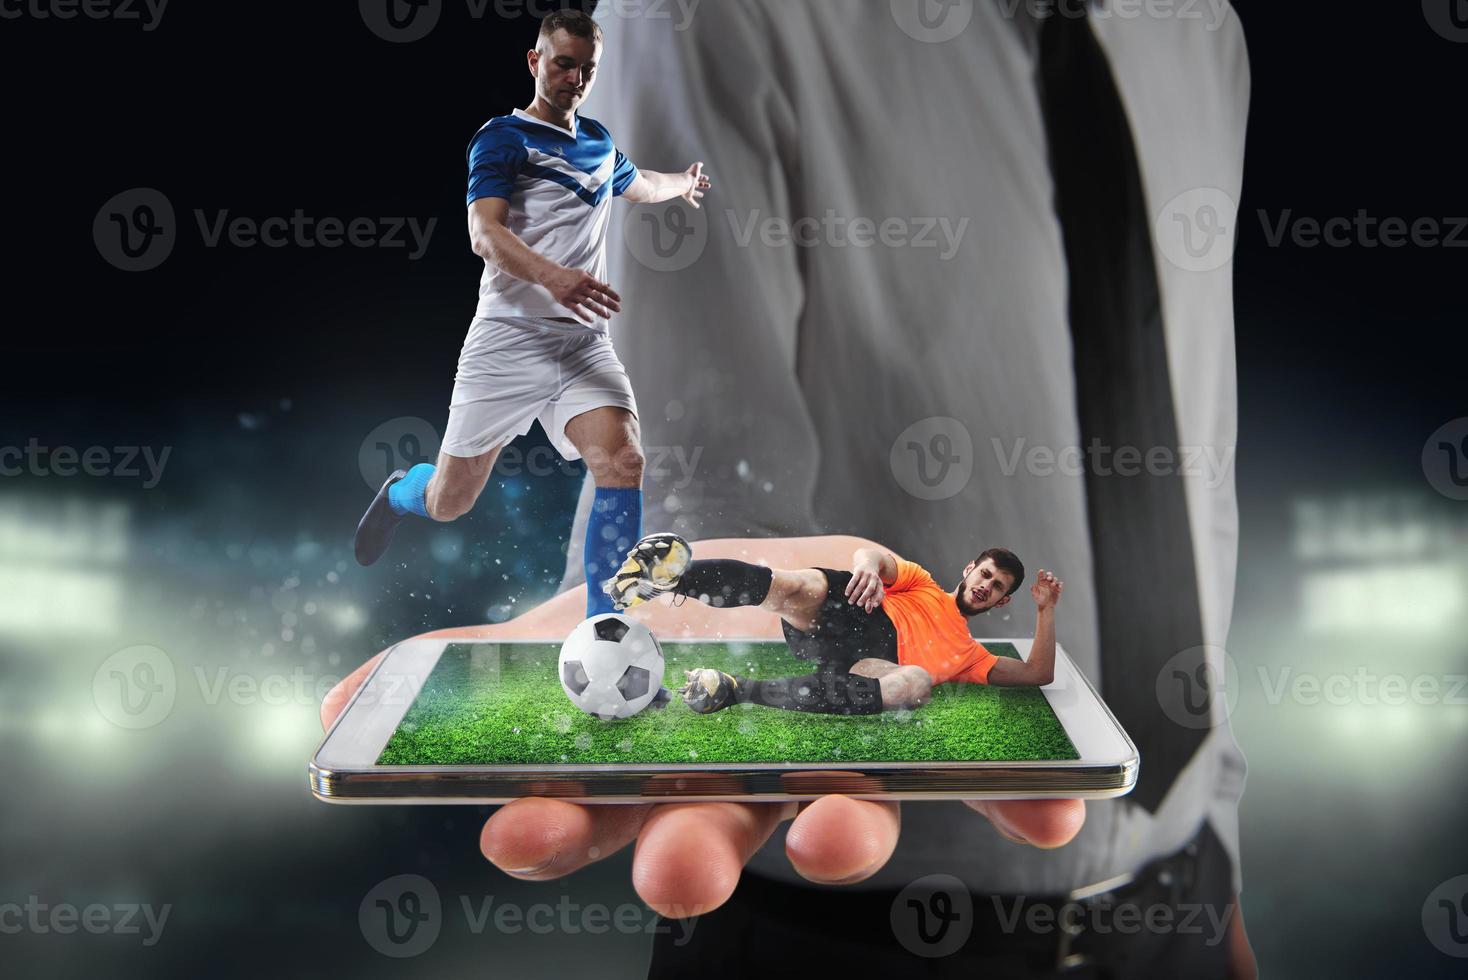 réel football joueurs cette sont affiché sur une téléphone portable pendant une rencontre photo